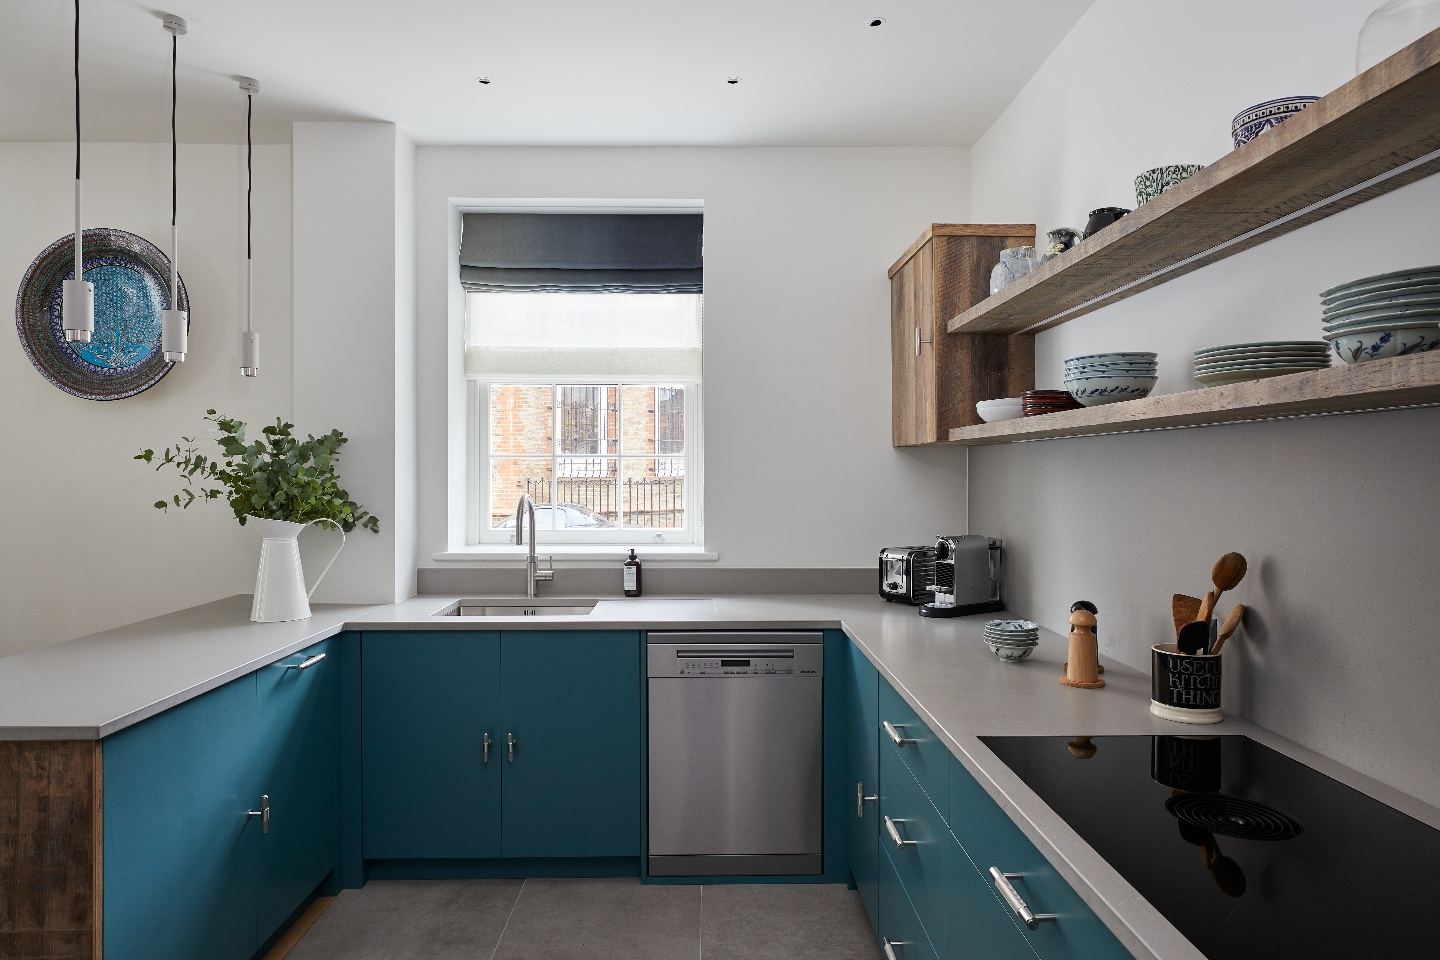 New kitchen in Swan Cottage using Caesarstone 4004 Raw Concrete worktop 